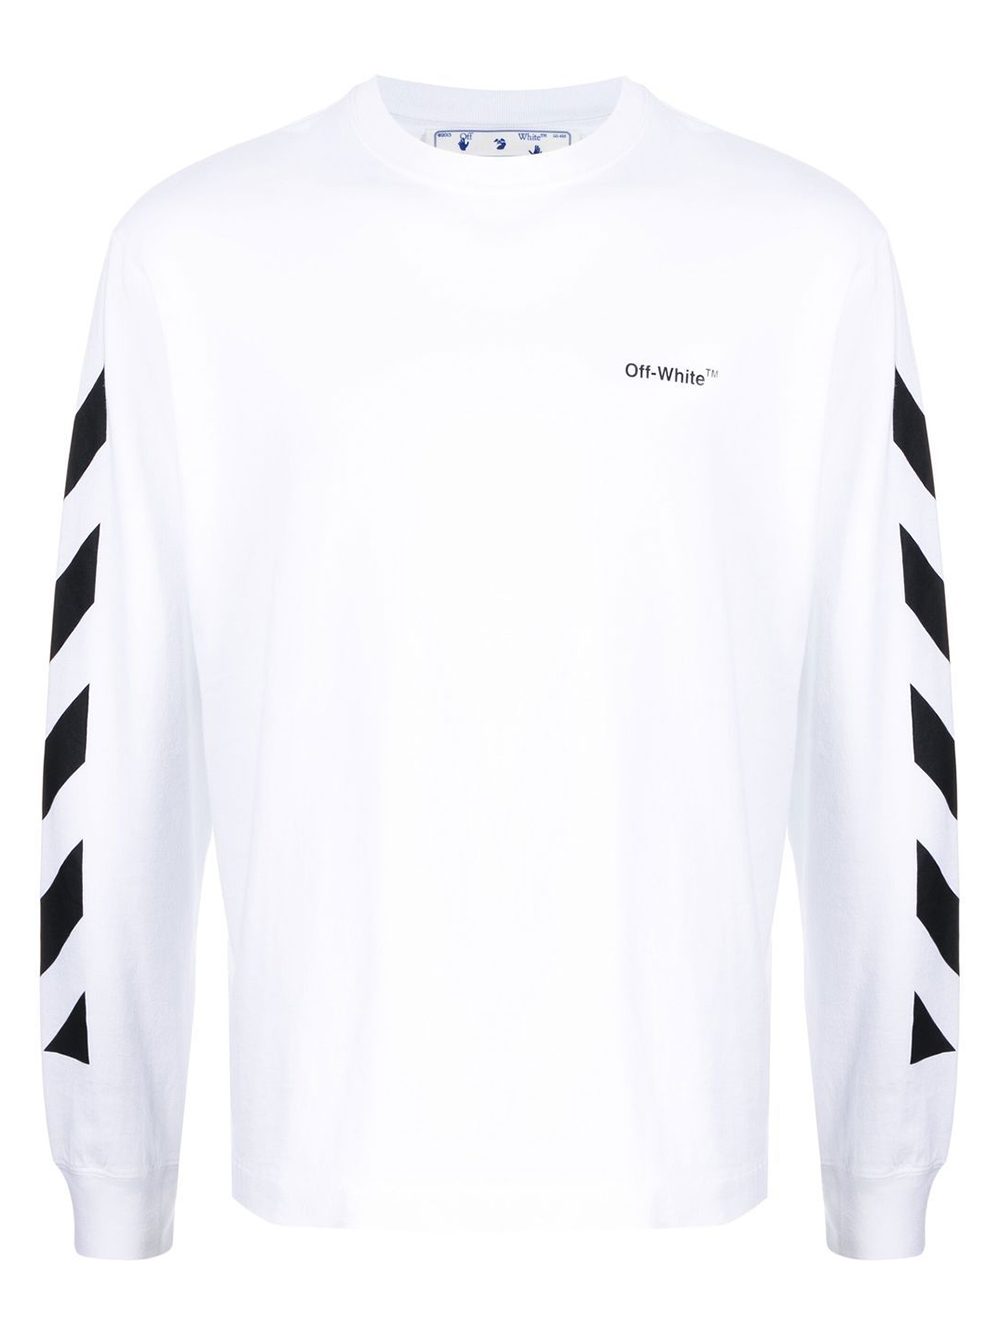 OFF-WHITE Diagonal Helvetica Long Sleeve T-Shirt White/Black